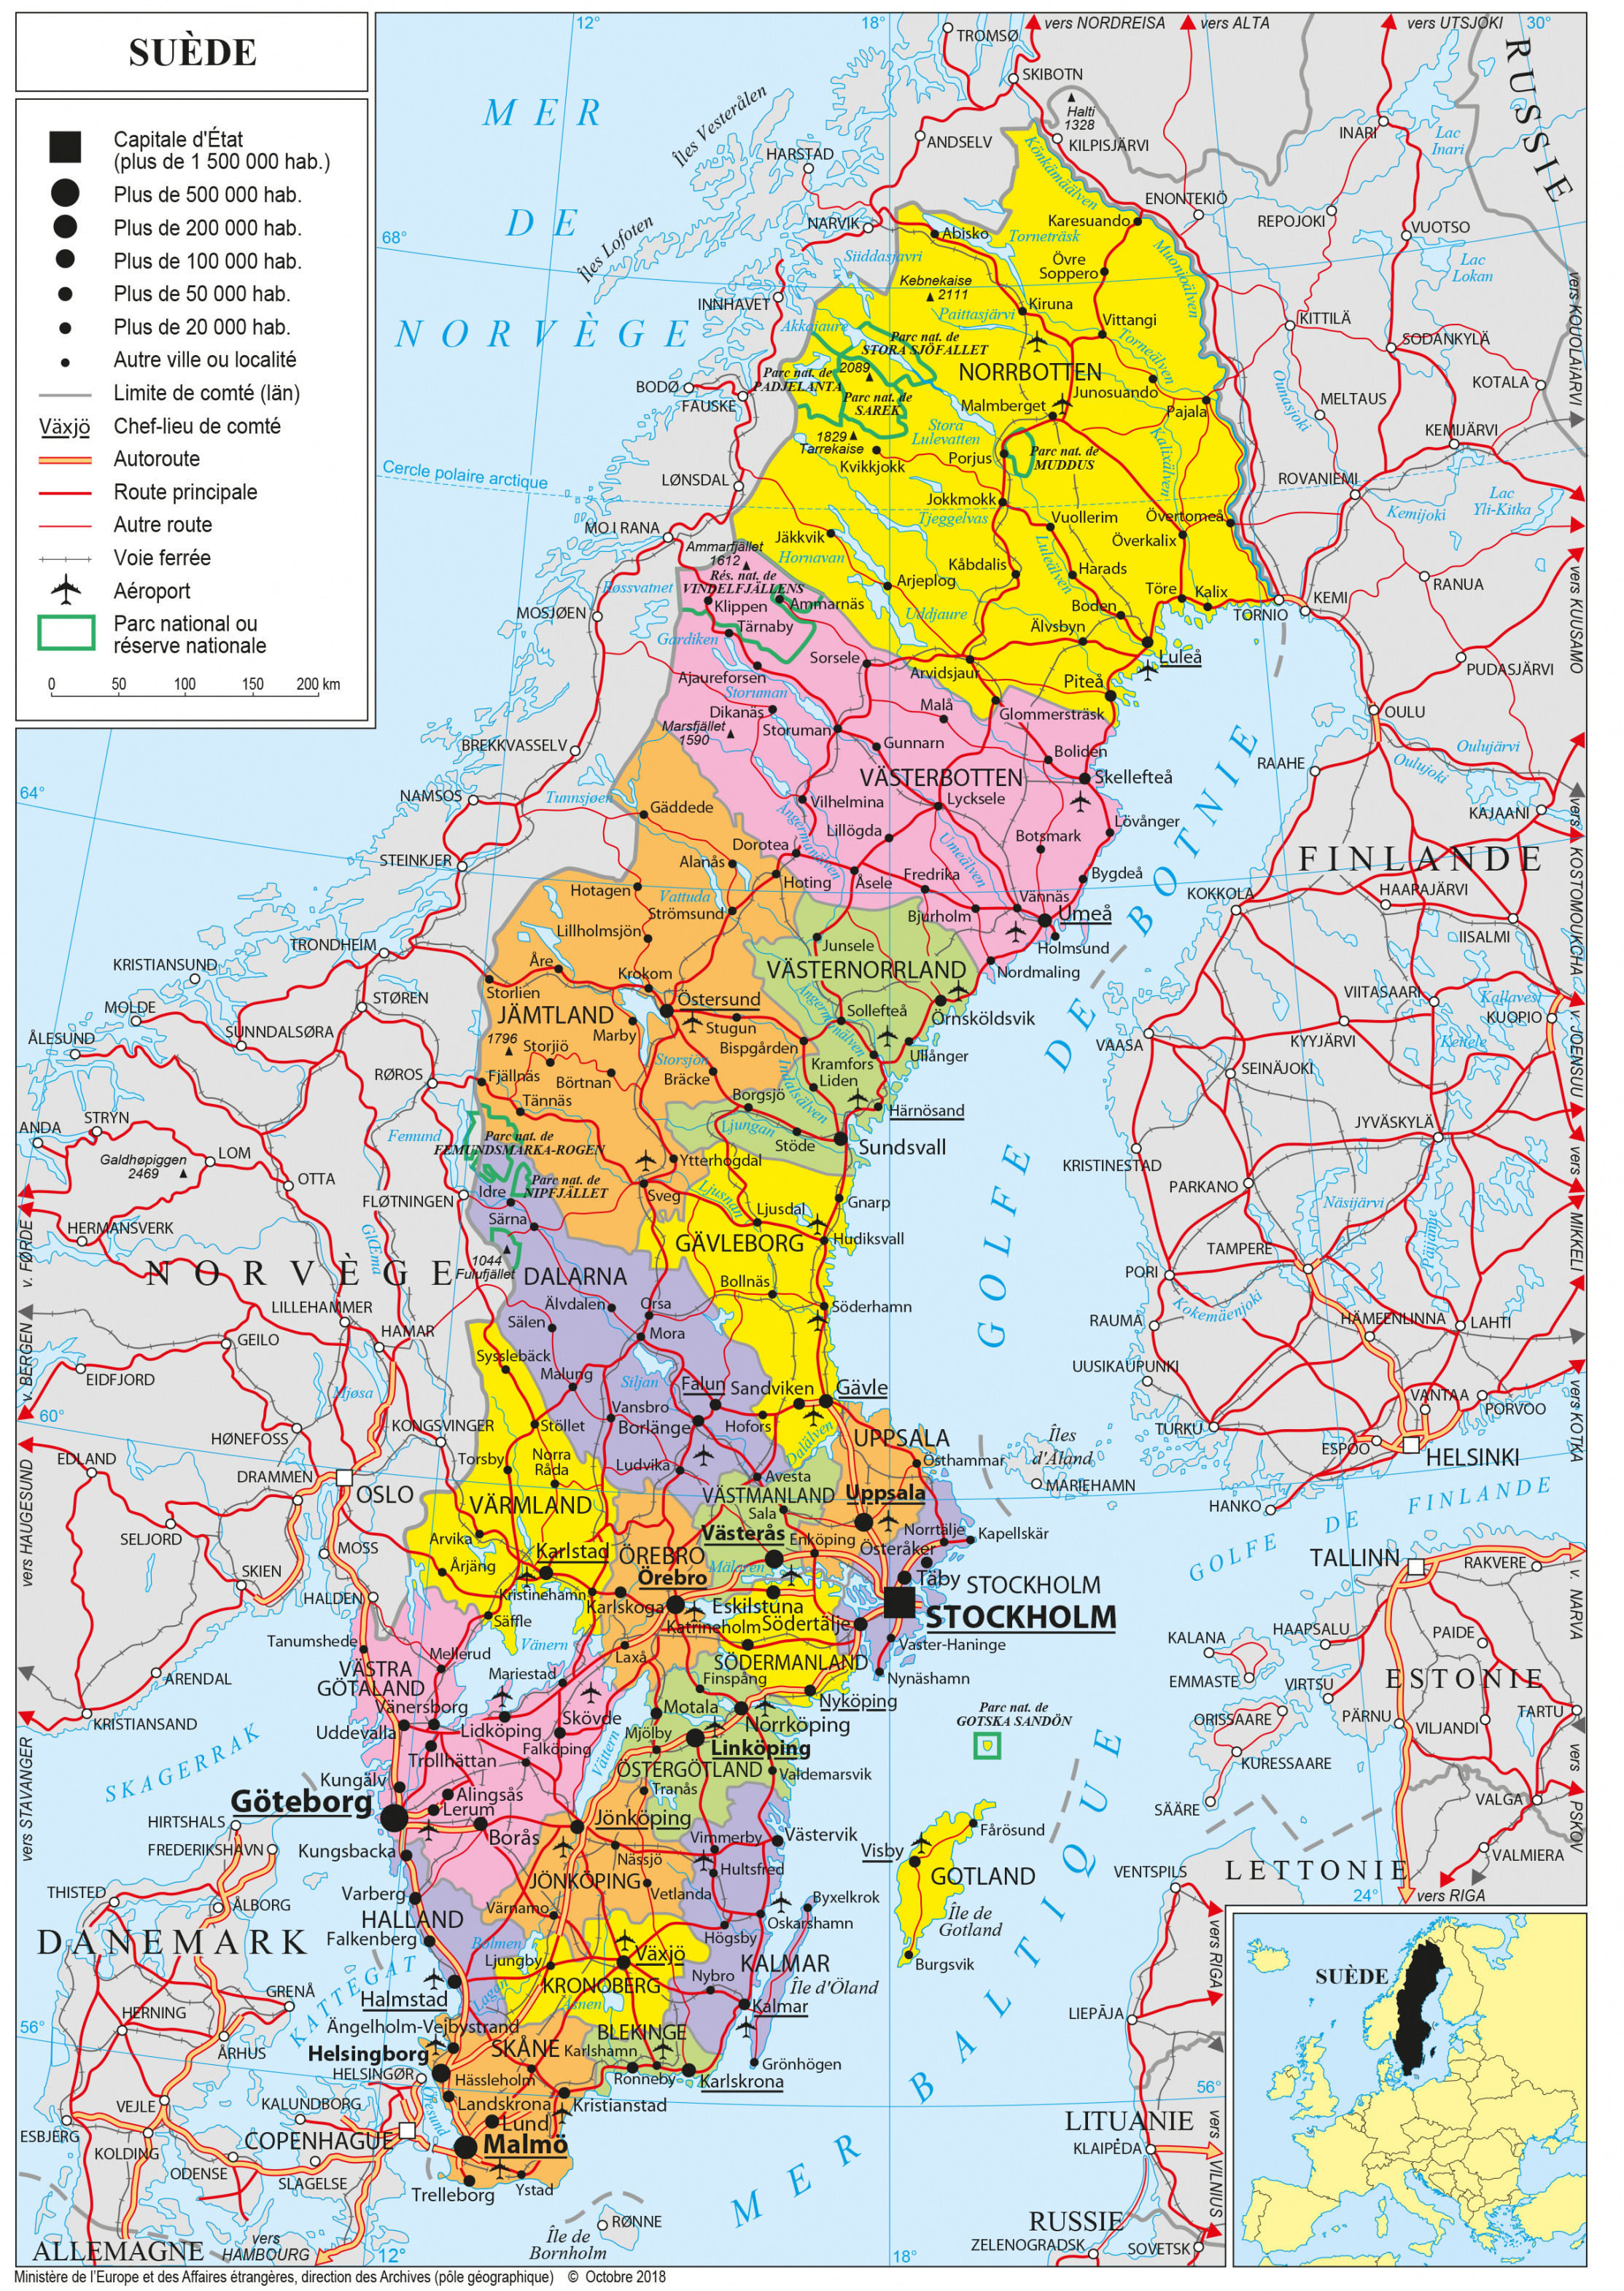 Geopolitical map of Sweden, Sweden maps